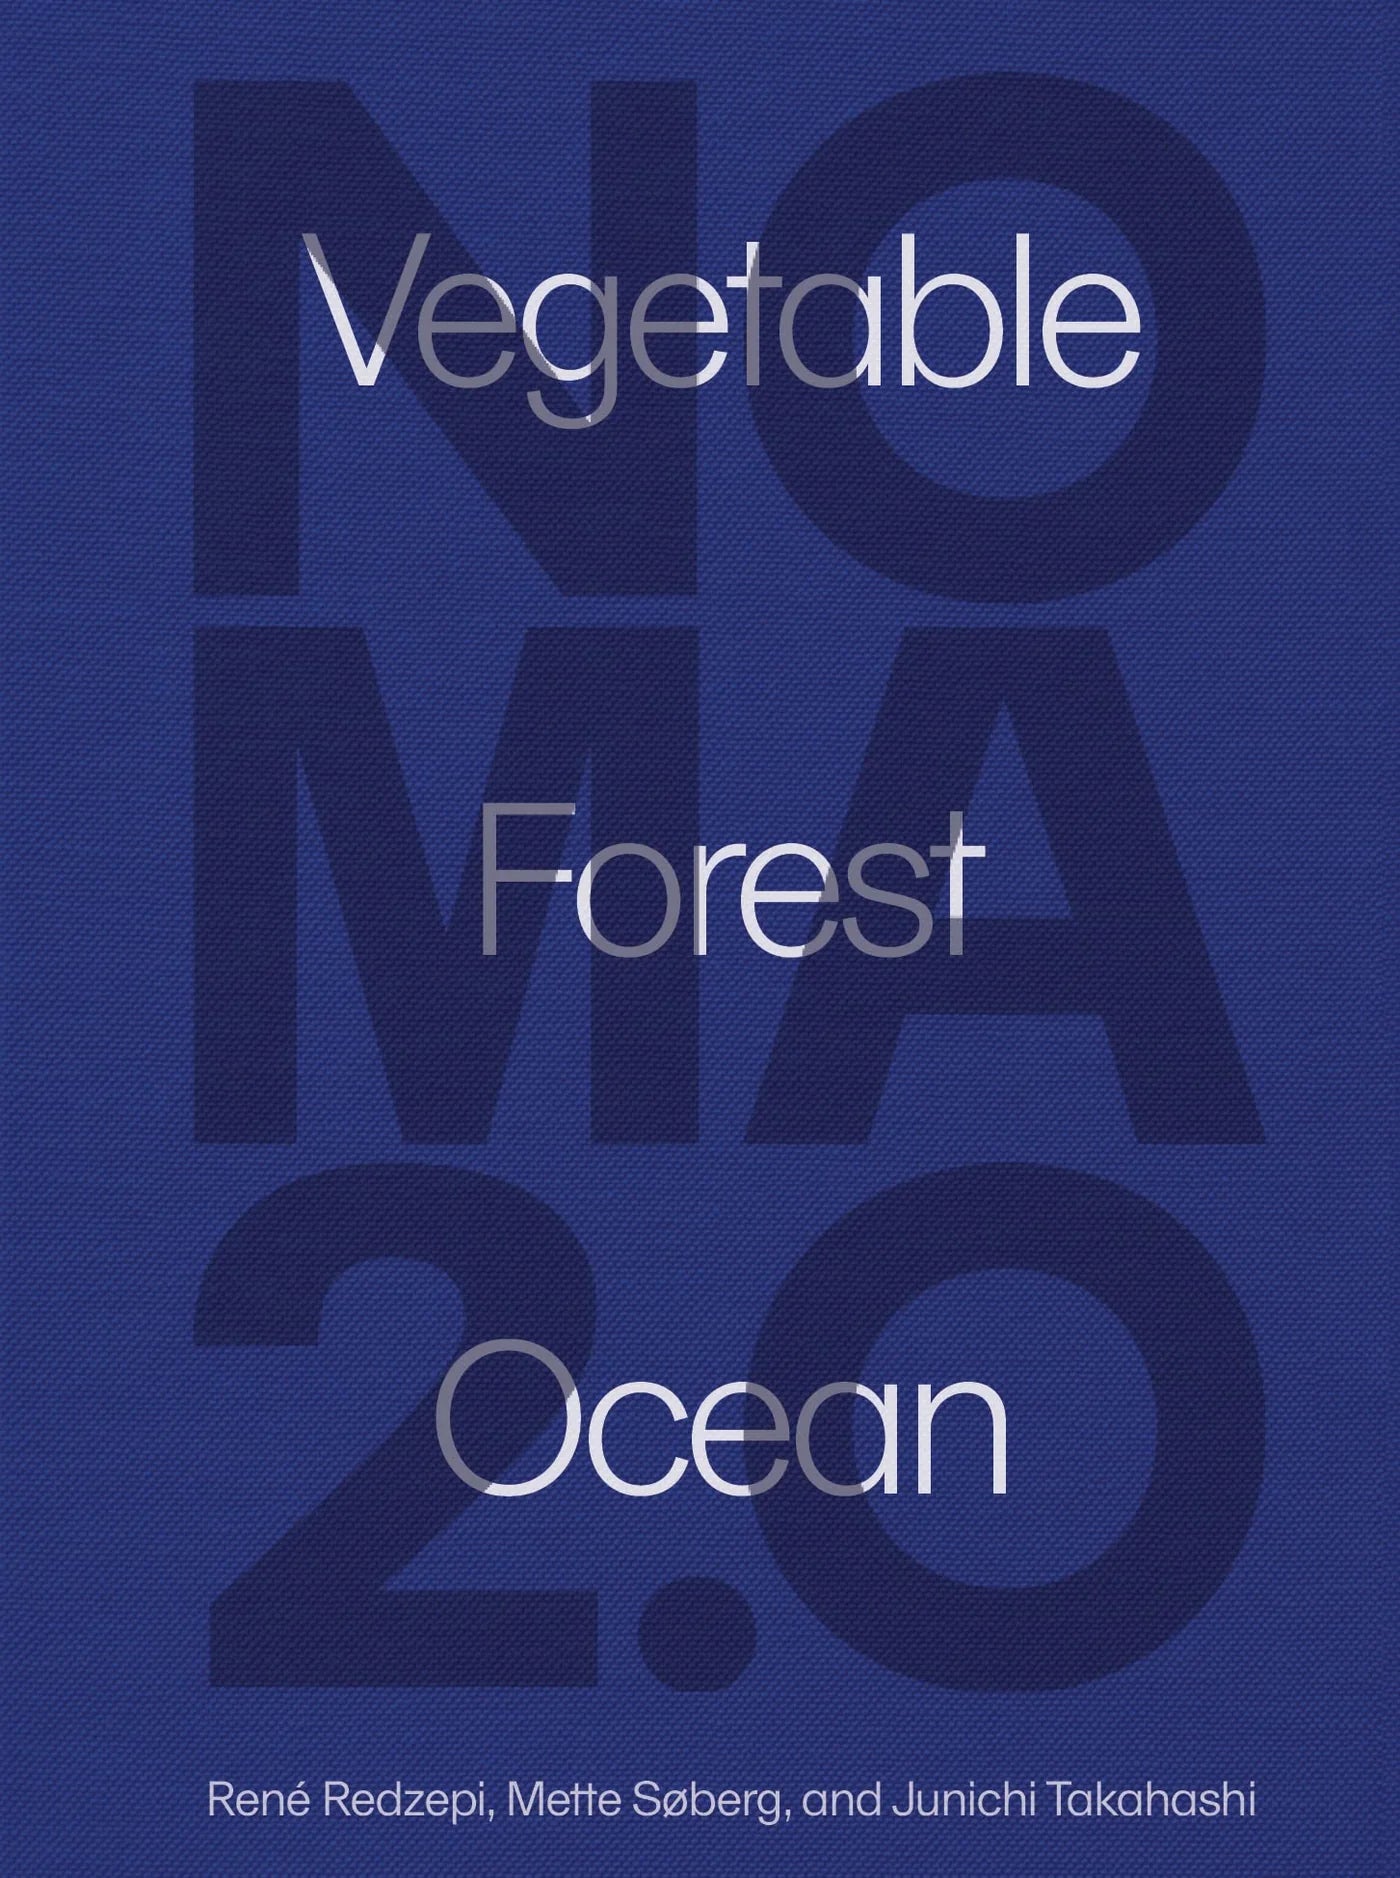 Noma 2.0 by René Redzepi, Mette Søberg & Junichi Takashi